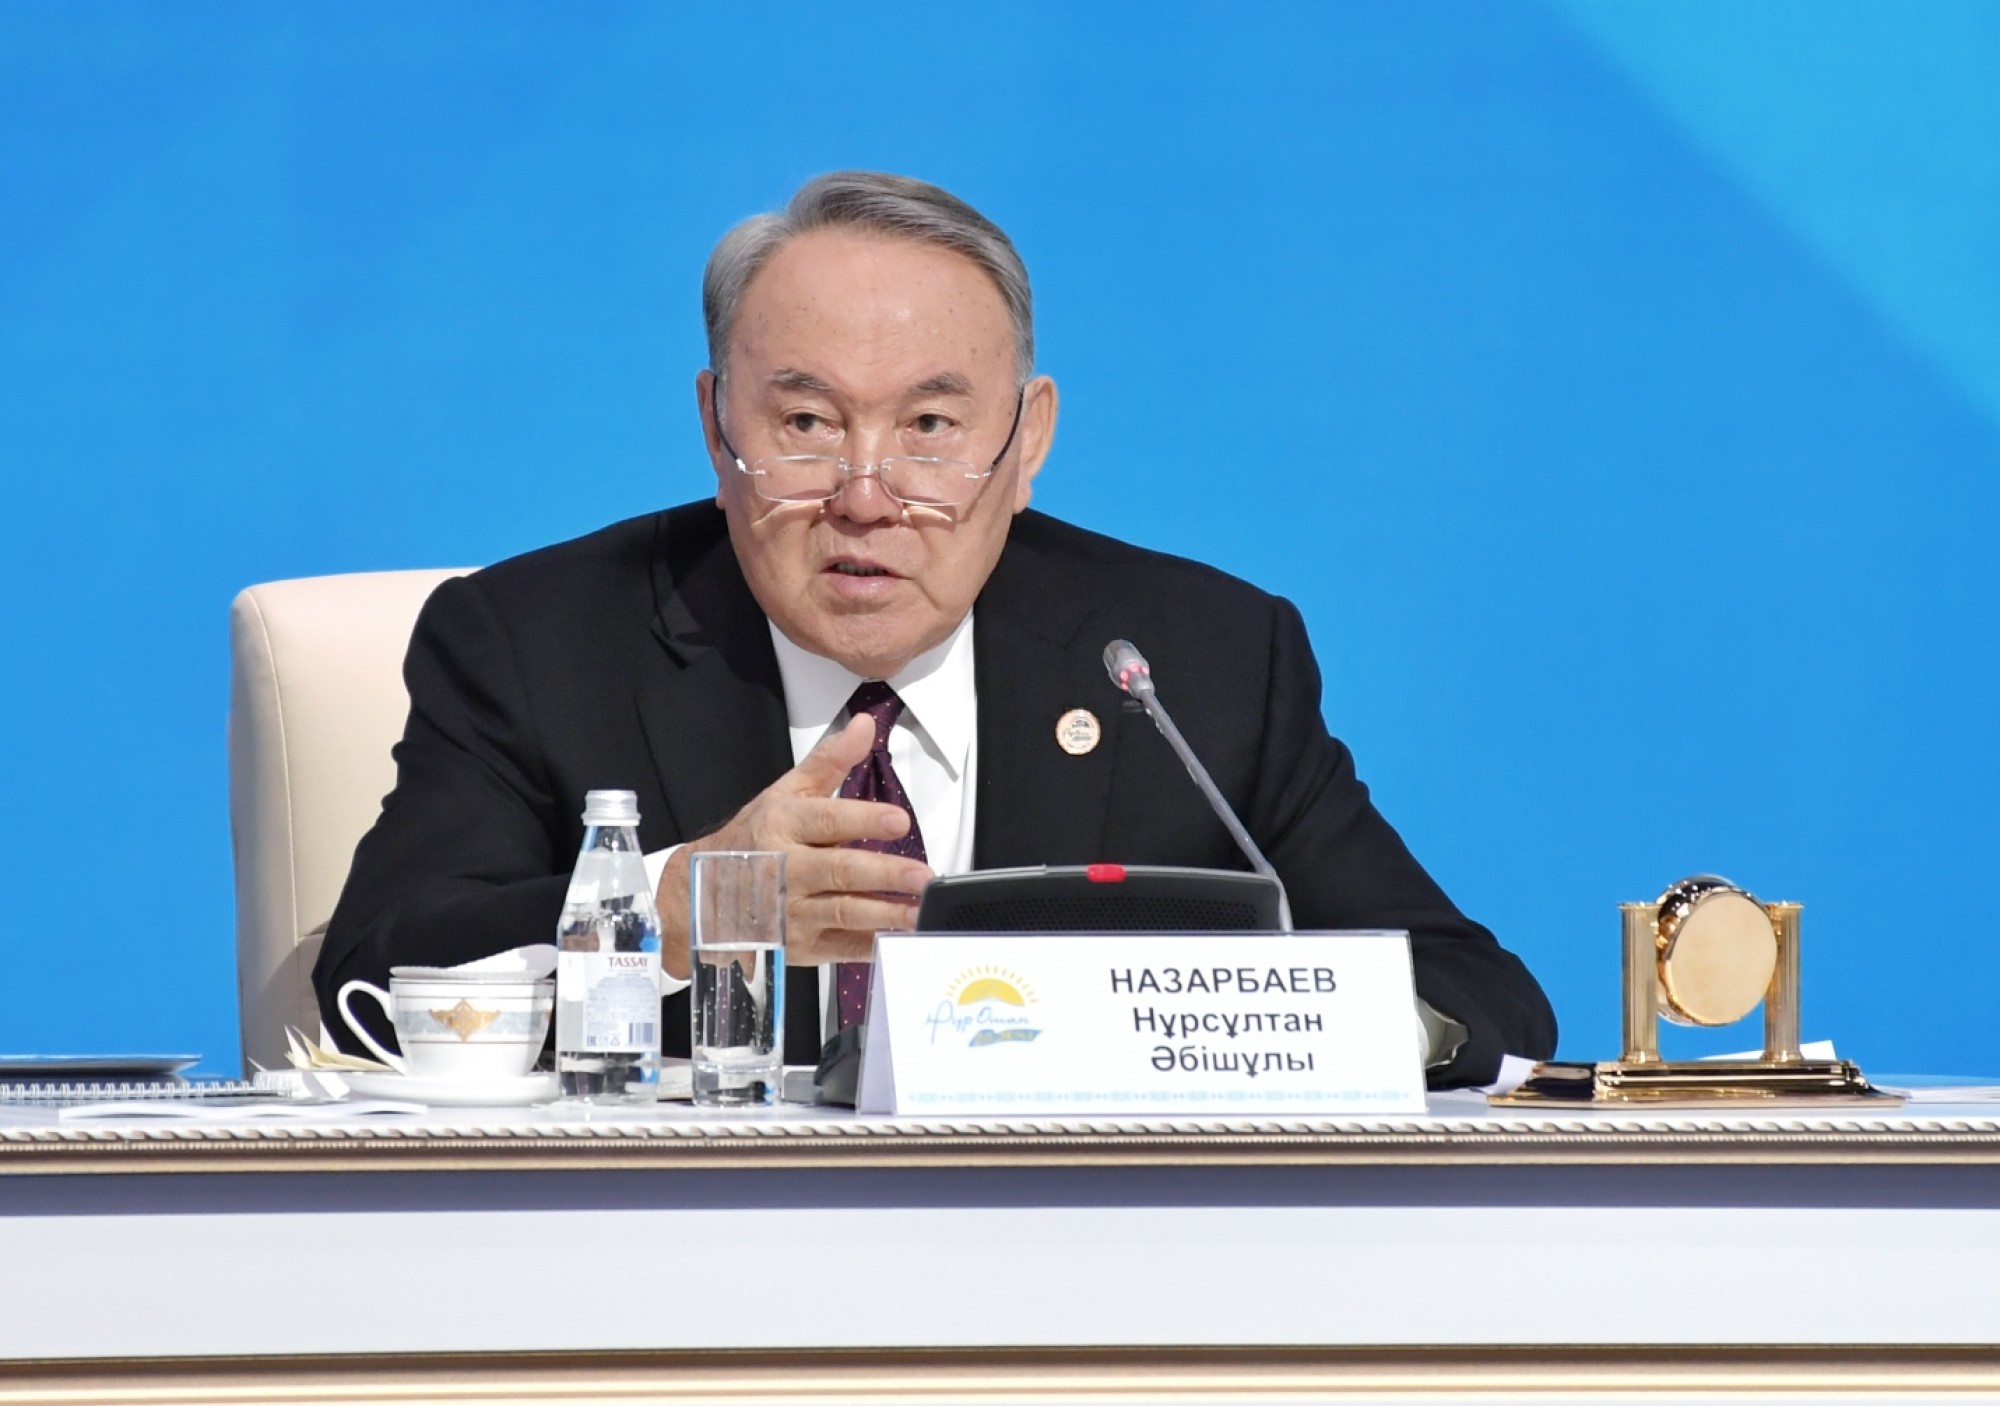 Выступление Нурсултана Назарбаева на XVIII съезде партии «Hұp Отан» 